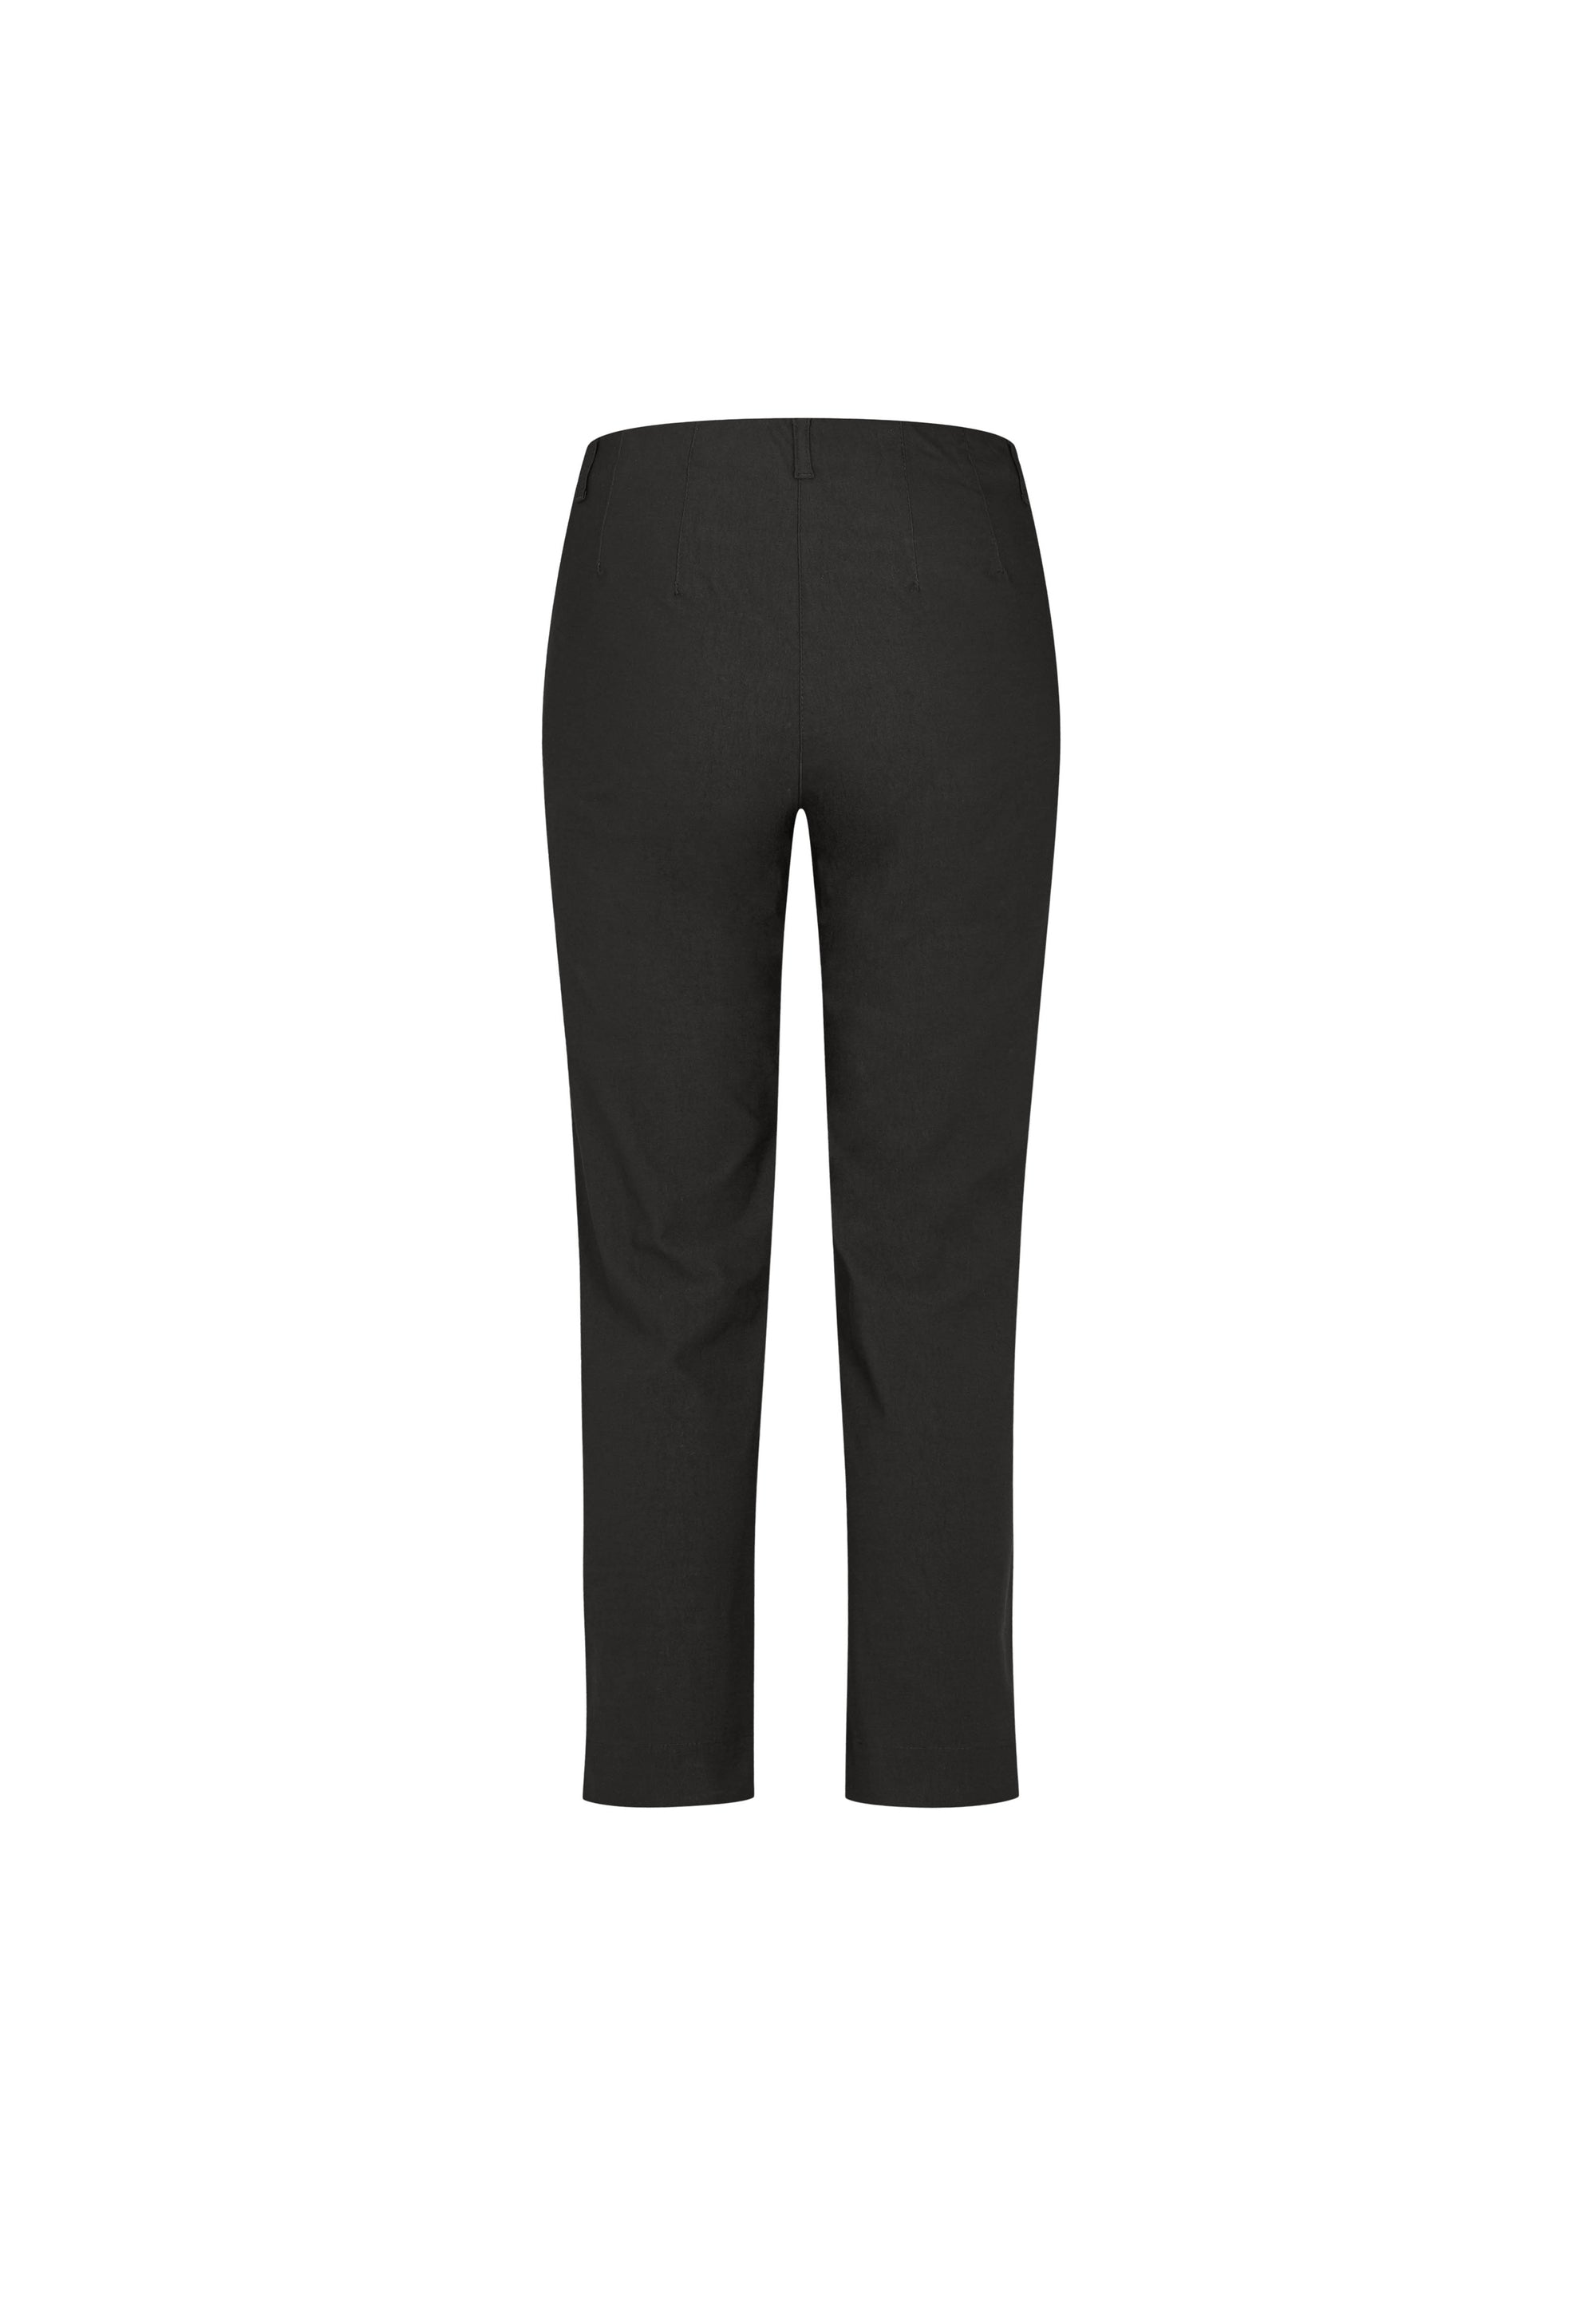 LAURIE Kelly Regular - Short Length Trousers REGULAR 99970 Black